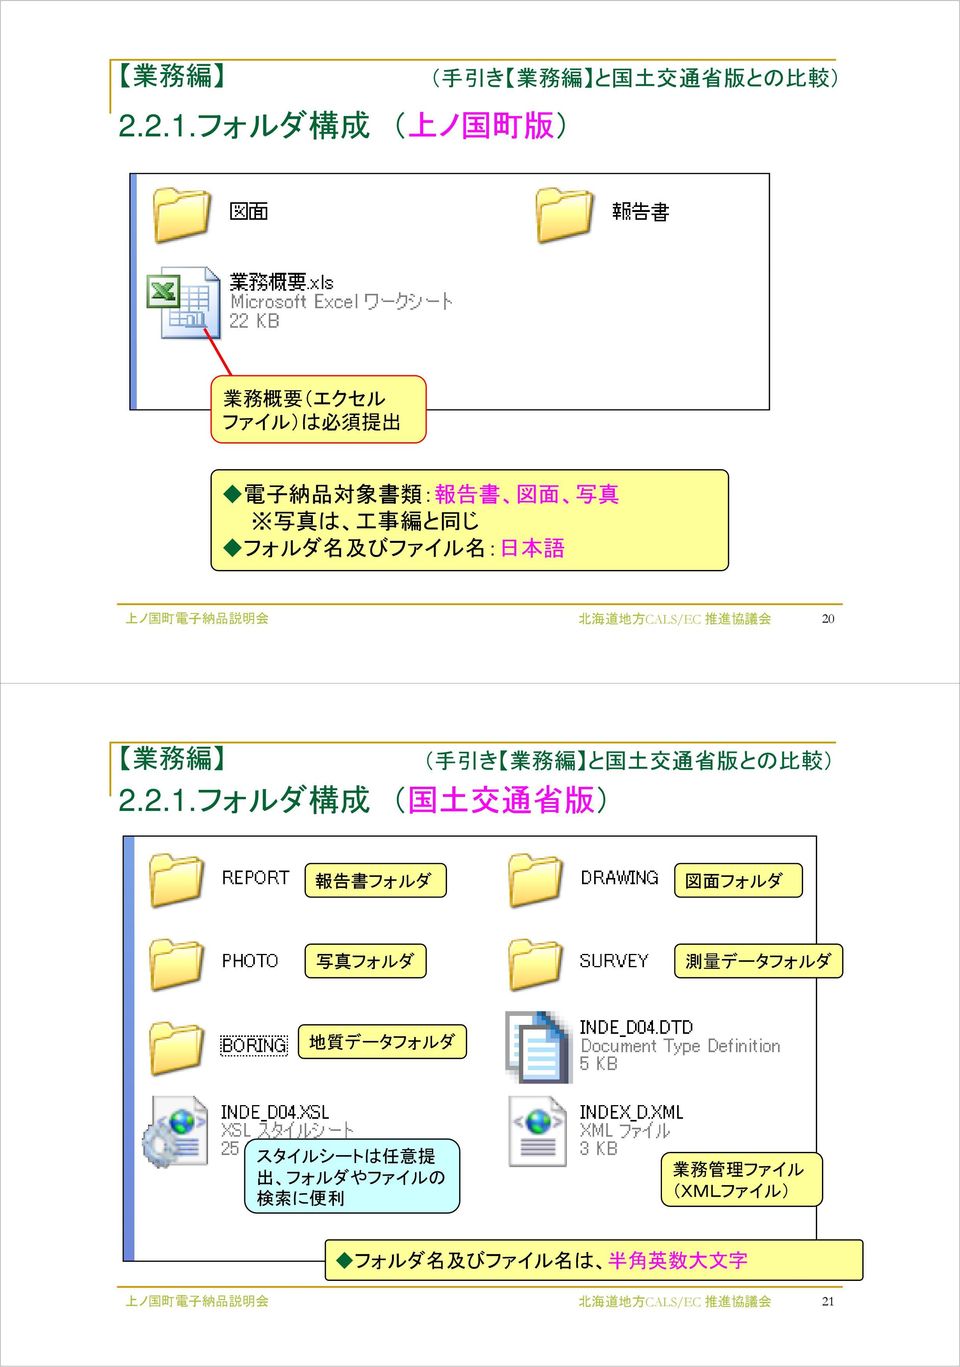 フォルダ 構 成 ( 上 ノ 国 町 版 ) 業 務 概 要 (エクセル ファイル)は 必 須 提 出 電 子 納 品 対 象 書 類 : 報 告 書 図 面 写 真 写 真 は 工 事 編 と 同 じ フォルダ 名 及 びファイル 名 : 日 本 語 上